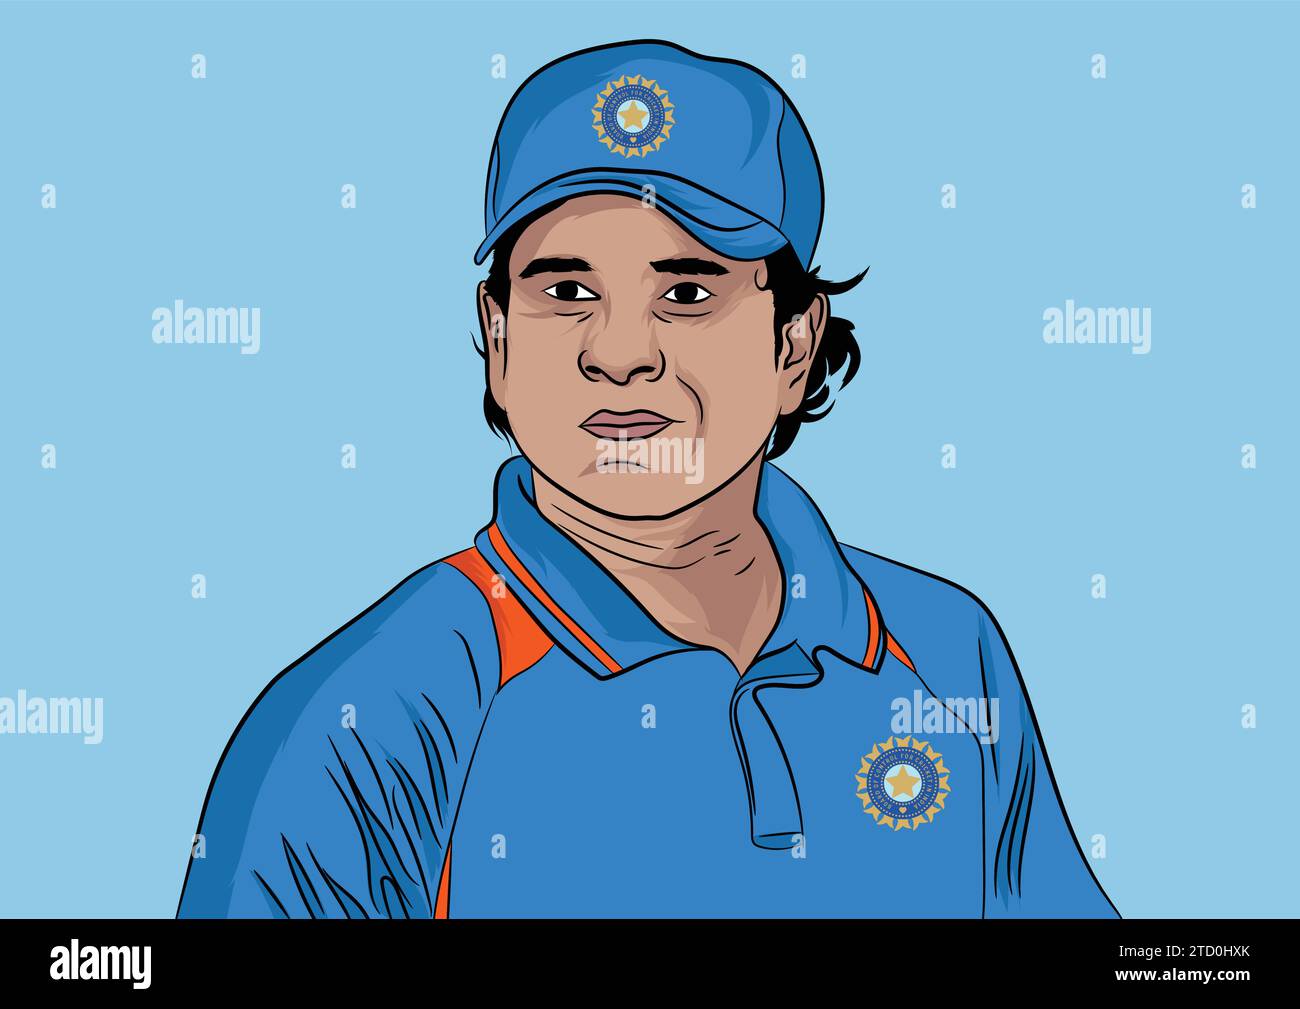 Illustration vectorielle du joueur de cricket indien Sachin Tendulkar Illustration de Vecteur